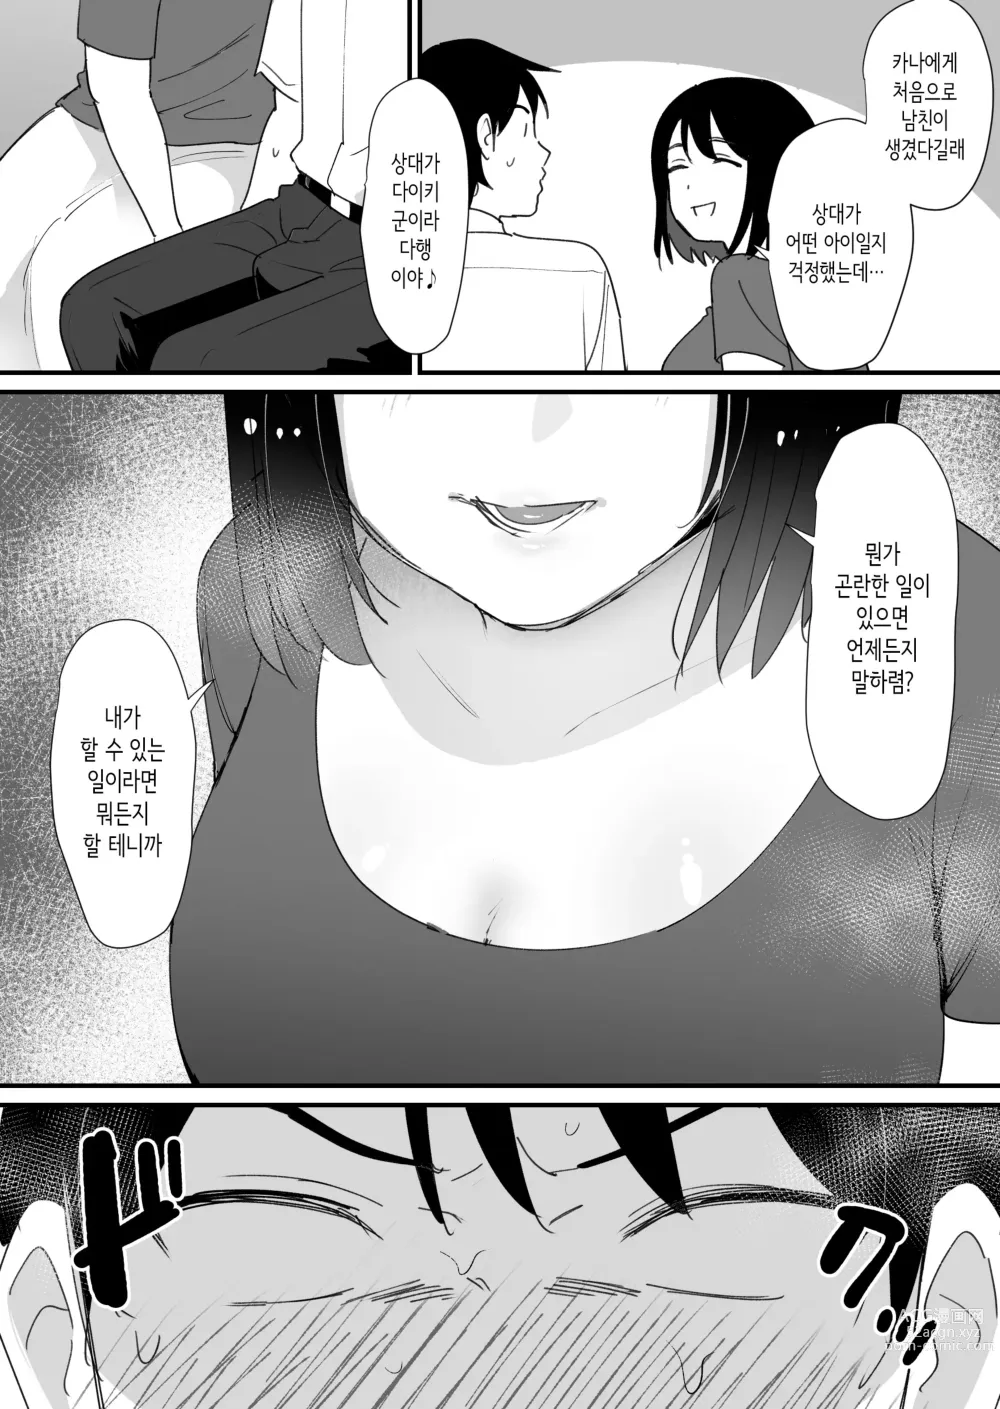 Page 9 of doujinshi 여친 엄마의 구멍